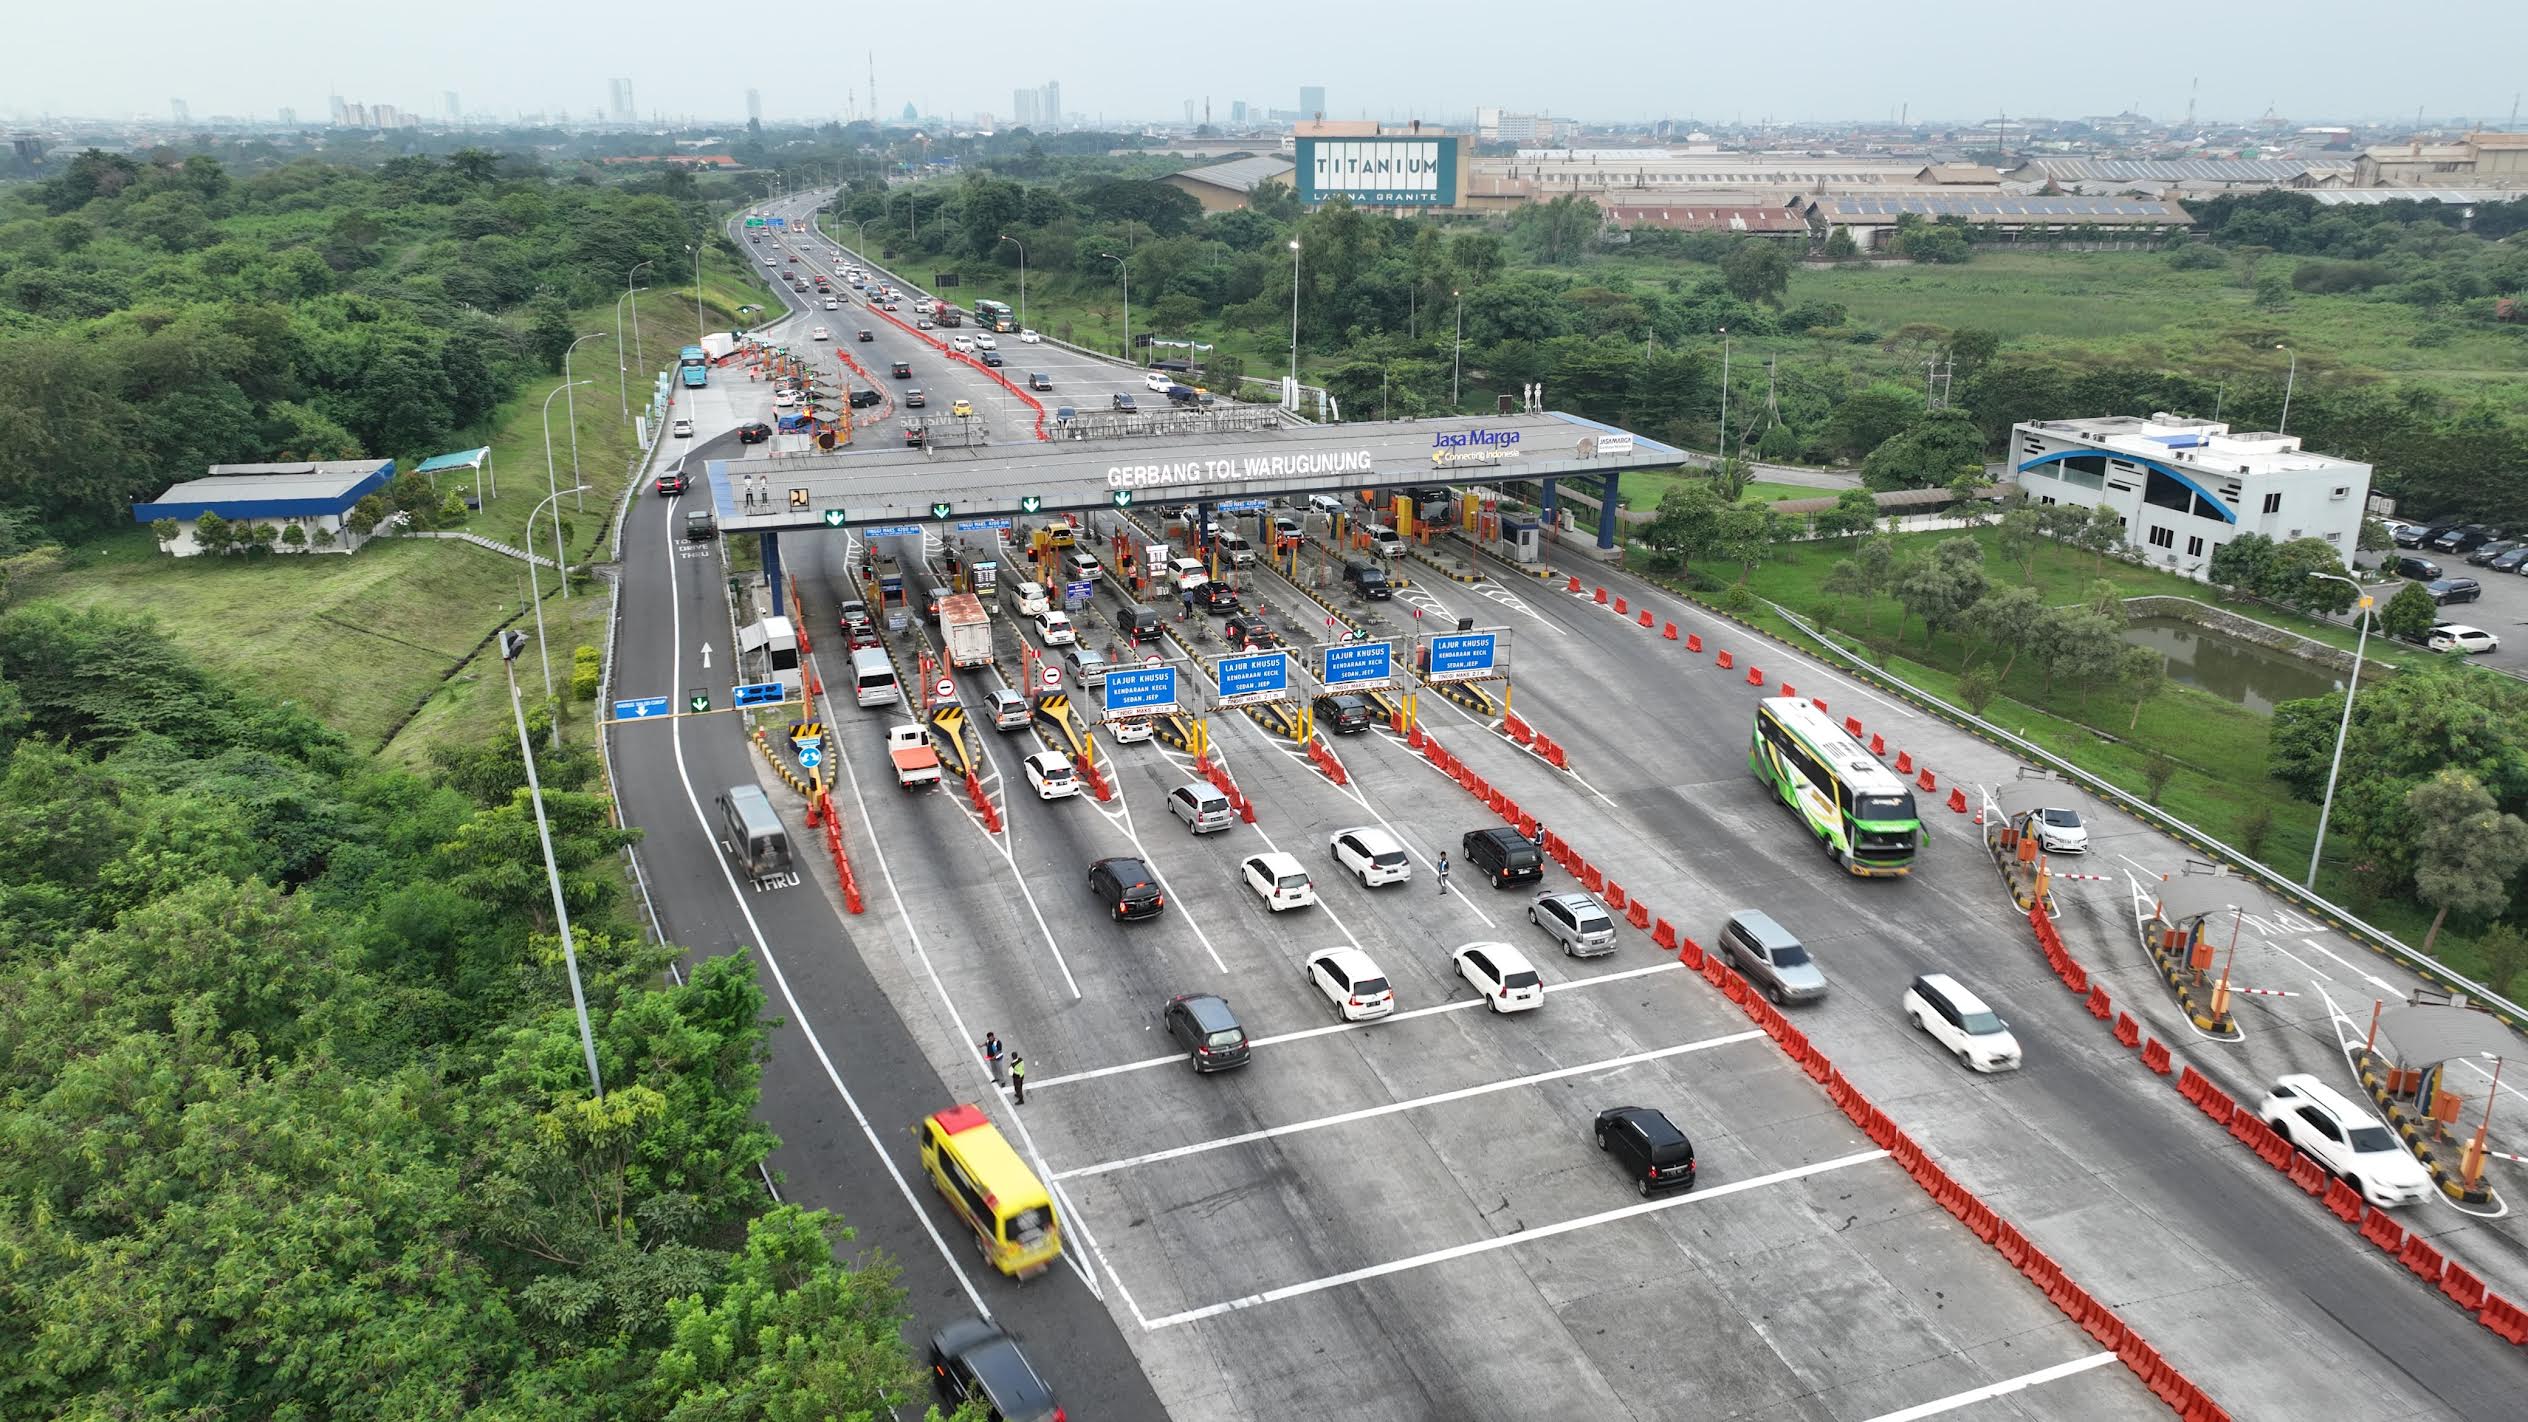 JTT Catat 521 Ribu Kendaraan Tinggalkan Jakarta Melalui GT Cikampek Utama